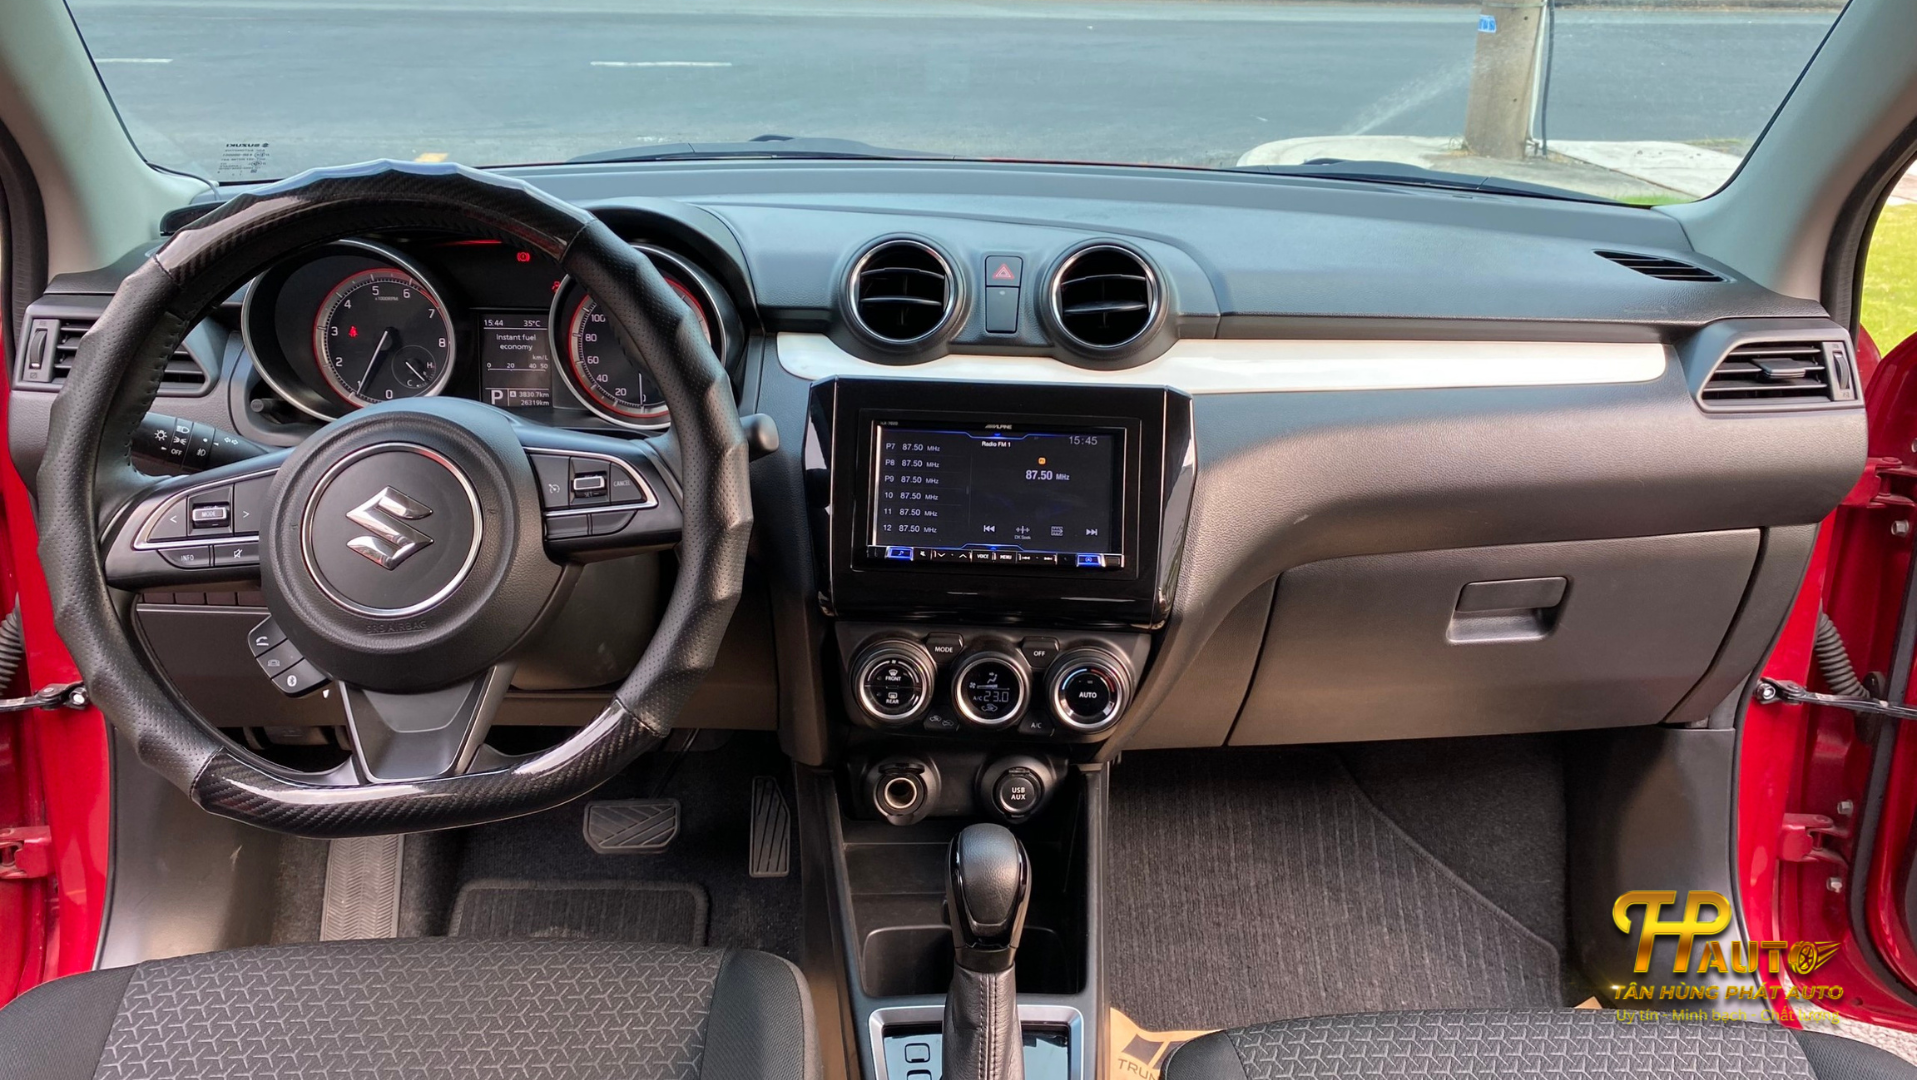 Bảng điều khiển Suzuki Swift 2019 đầy đủ tiện ích